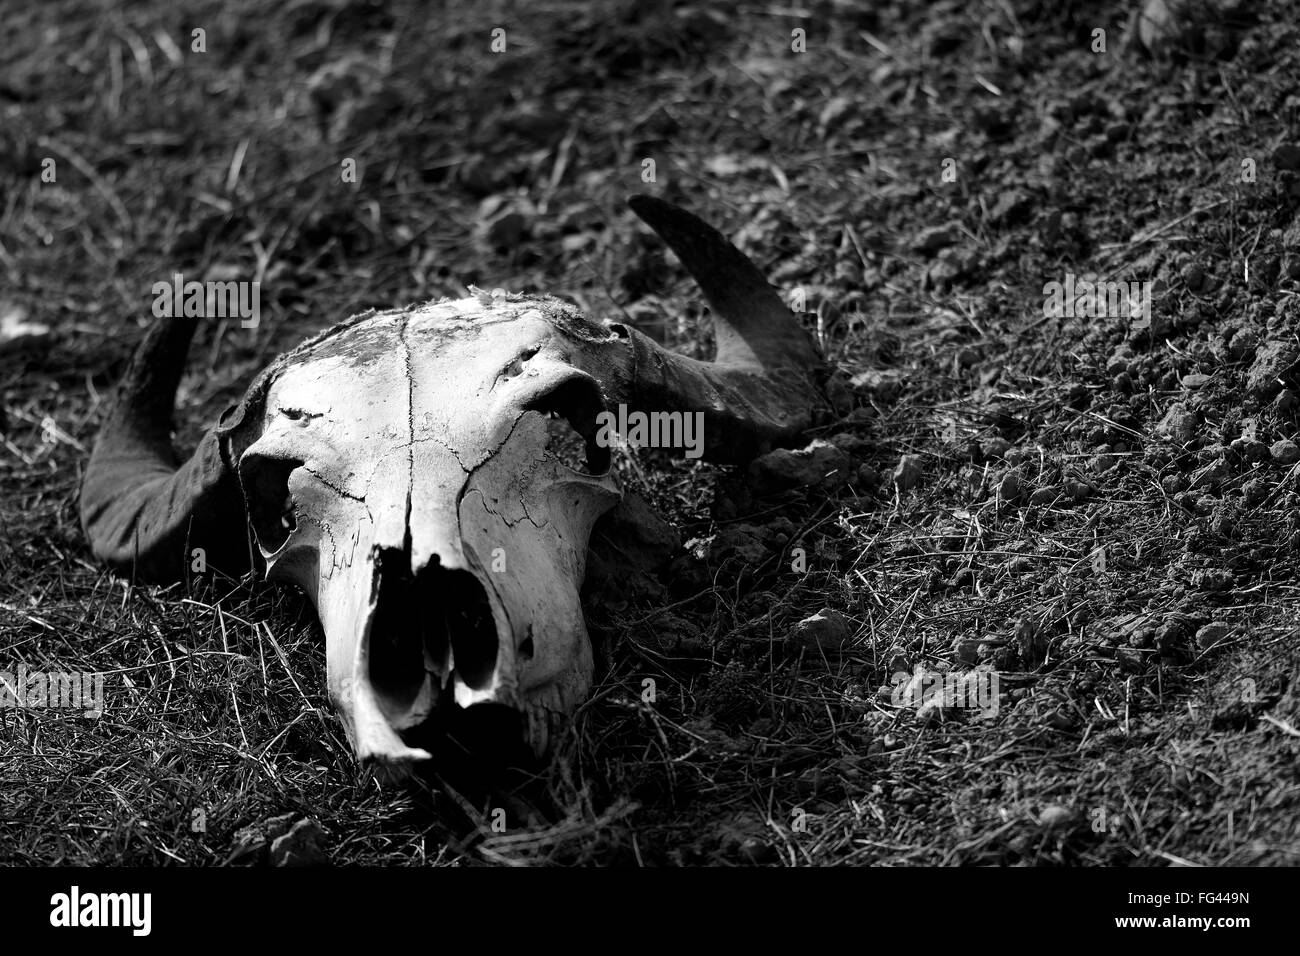 Schaf-Schädel auf Hügel in schwarz und weiß. Ein gehörnter Schädel liegt auf dem kurzen Rasen vor Felsen Stockfoto